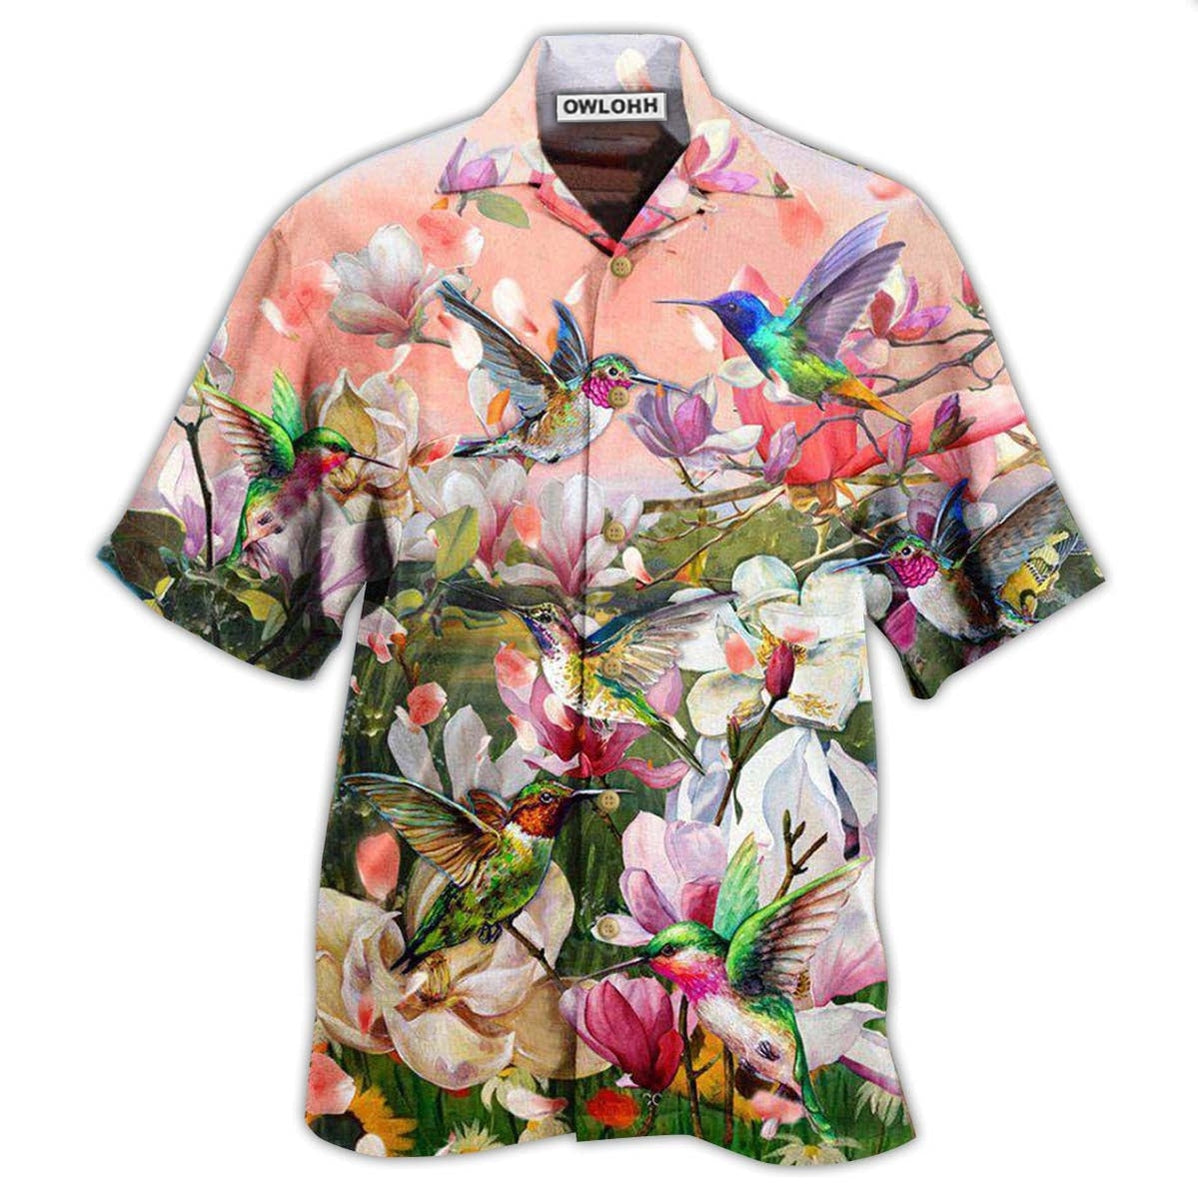 Hawaiian Shirt / Adults / S Hummingbird Blooming Lovely White Magnolia - Hawaiian Shirt - Owls Matrix LTD